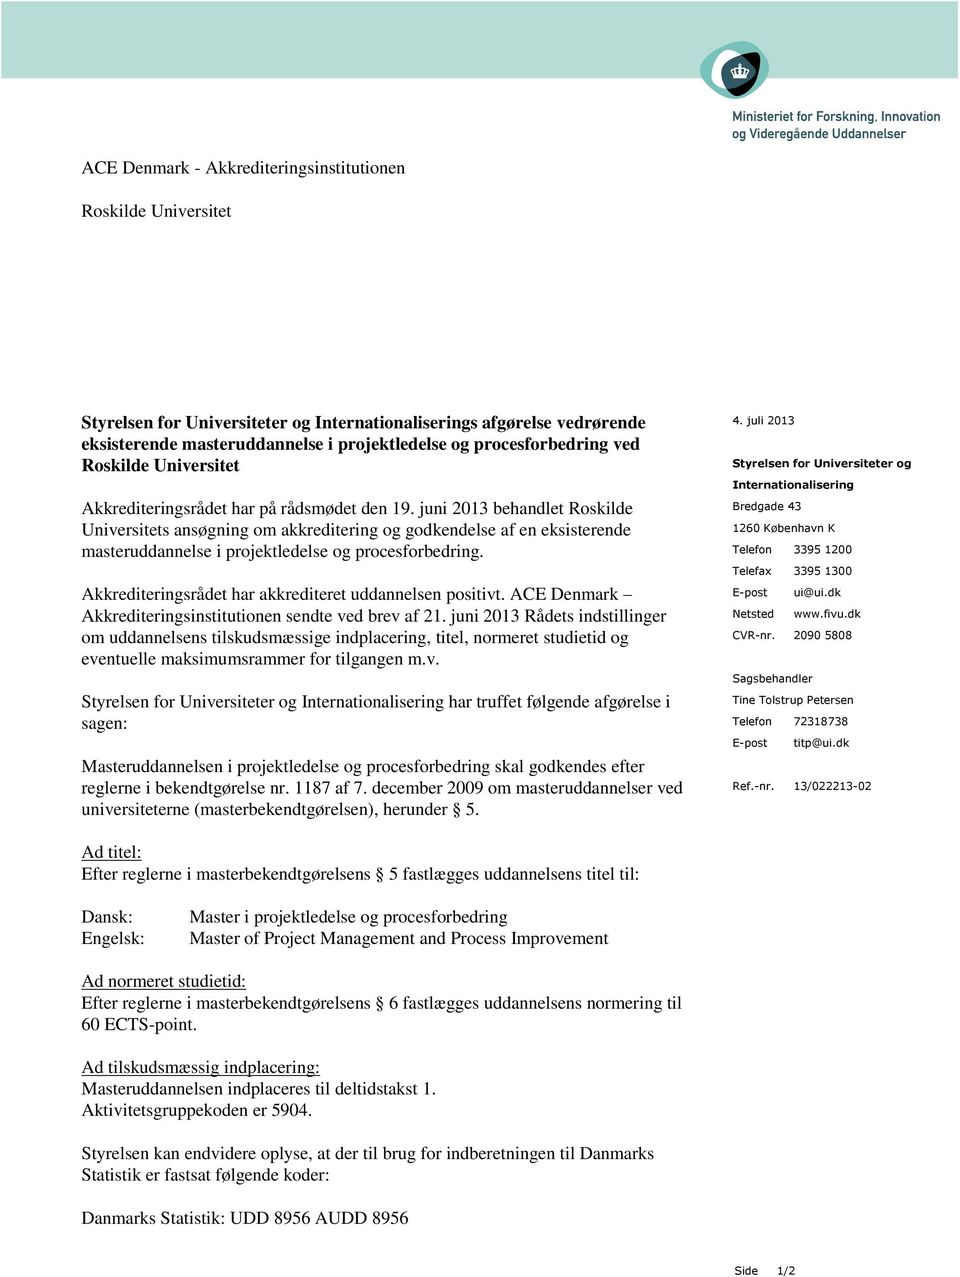 juni 2013 behandlet Roskilde Universitets ansøgning om akkreditering og godkendelse af en eksisterende masteruddannelse i projektledelse og procesforbedring.